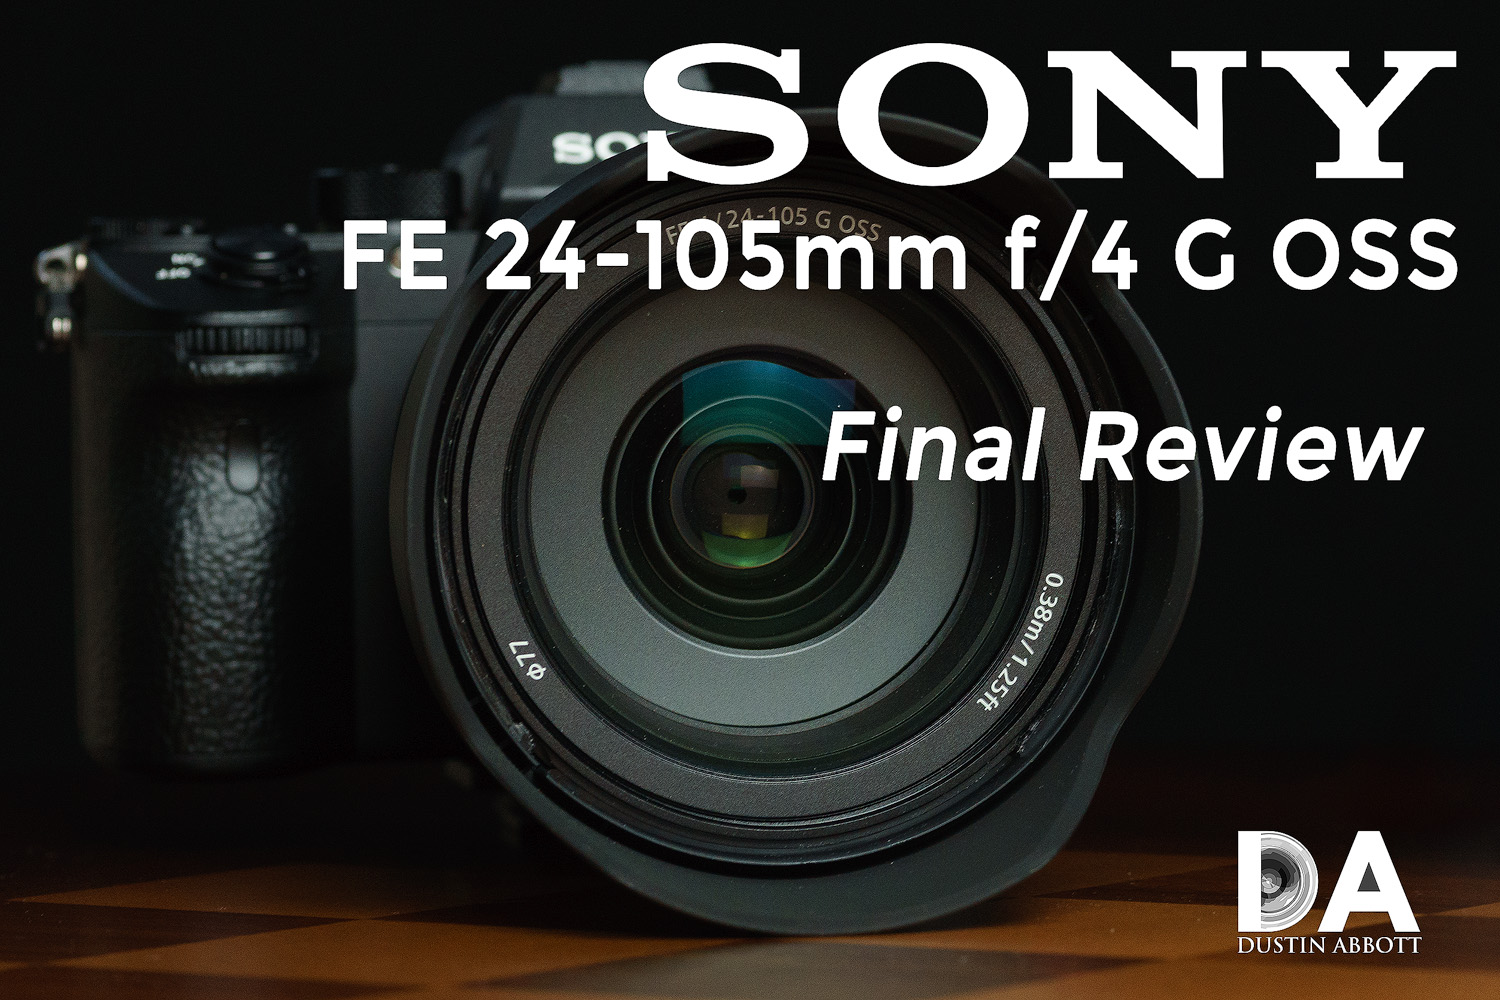 Sony FE 24-105mm f/4 G OSS Review - DustinAbbott.net